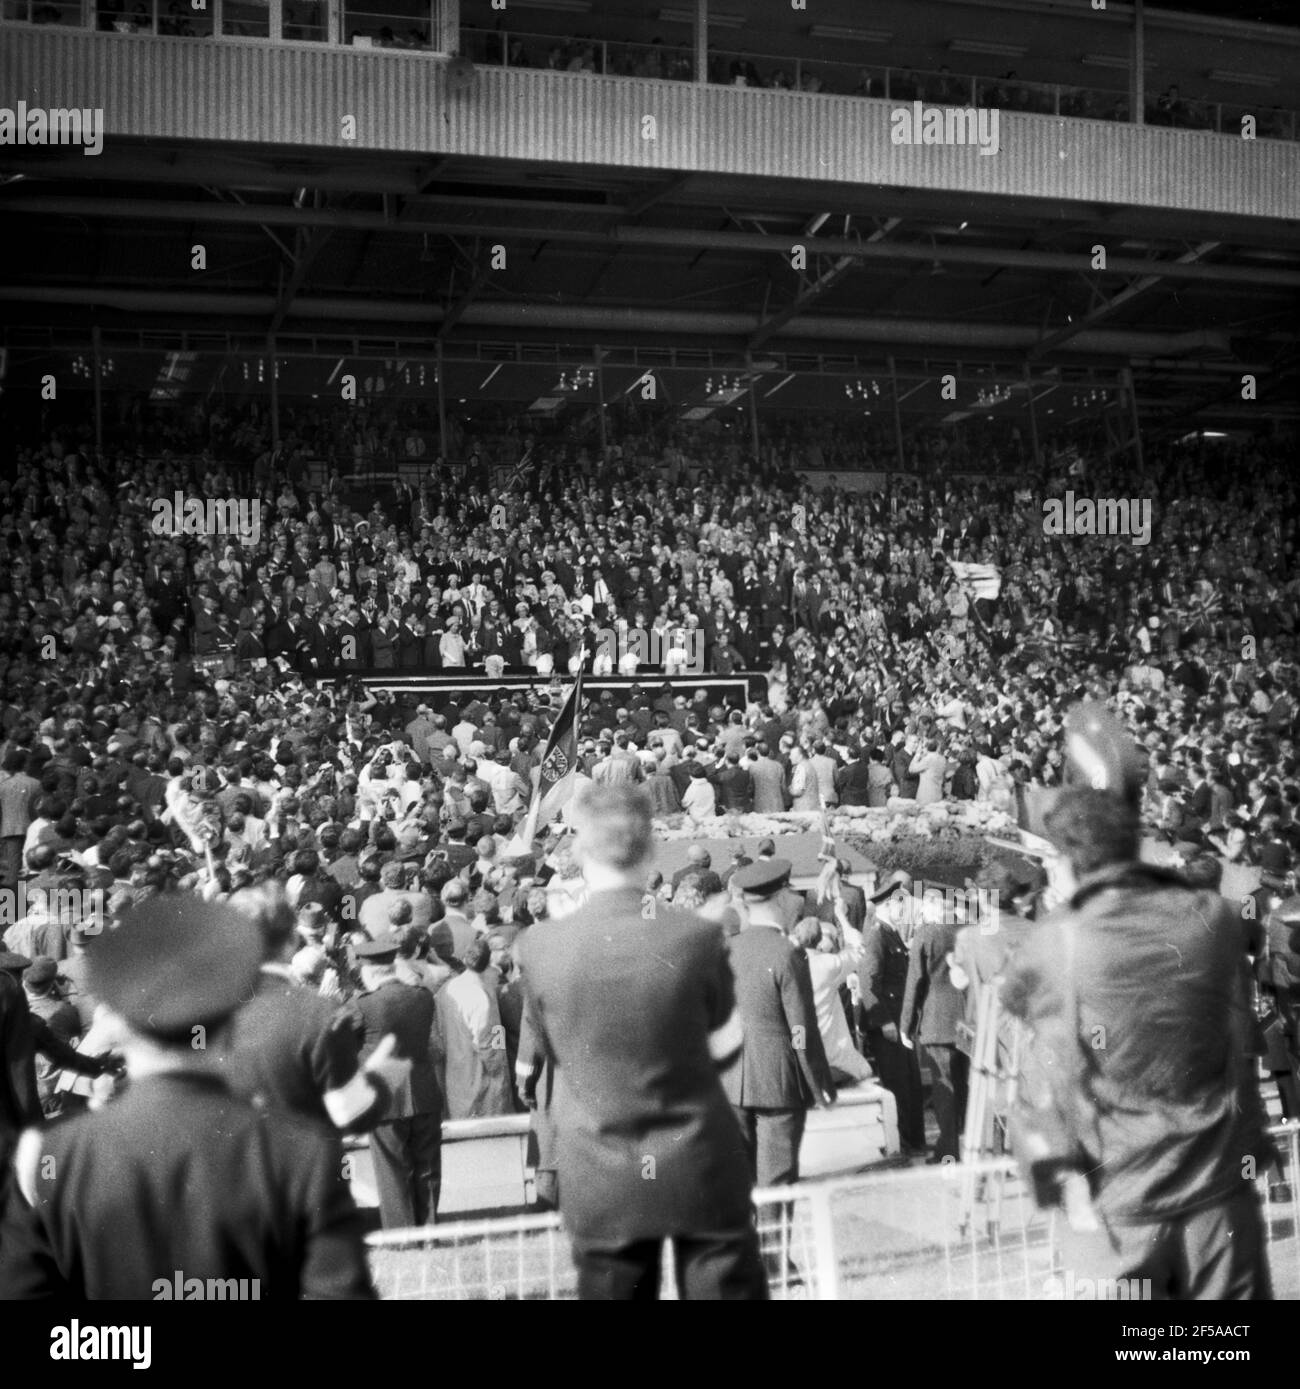 England gegen Westdeutschland WM-Finale 1966, Wembley Stadium Königin Elizabeth überreicht England die Jules Rimet Trophy - die Weltmeisterschaft - Caprain Bobby Moore Foto von Tony Henshaw Archiv Stockfoto